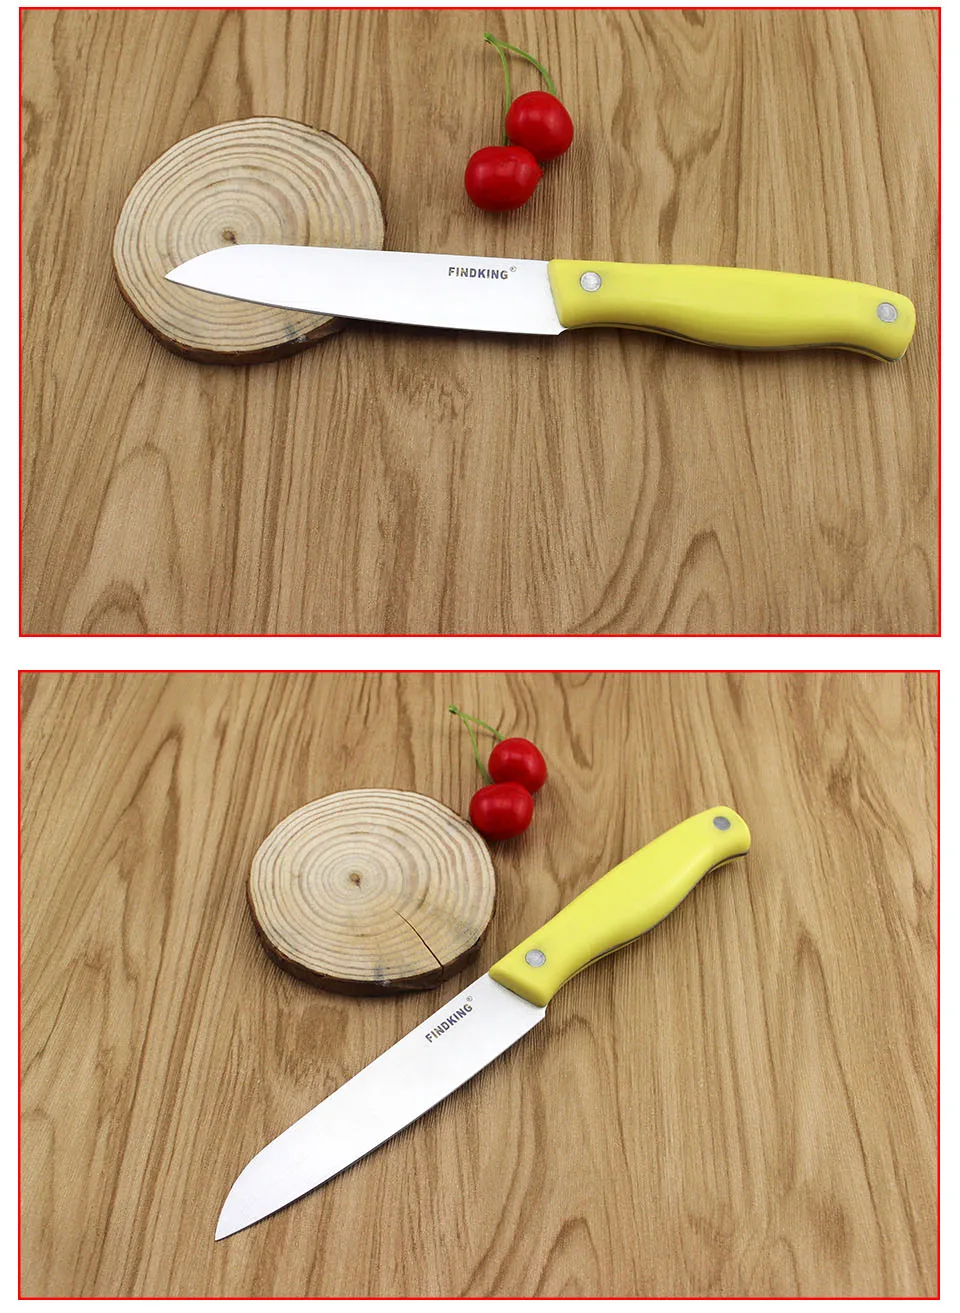 3 шт. в одном наборе высококачественный кухонный нож из нержавеющей стали, набор нож для мяса+ нож для фруктов+ Мульти нож для чистки